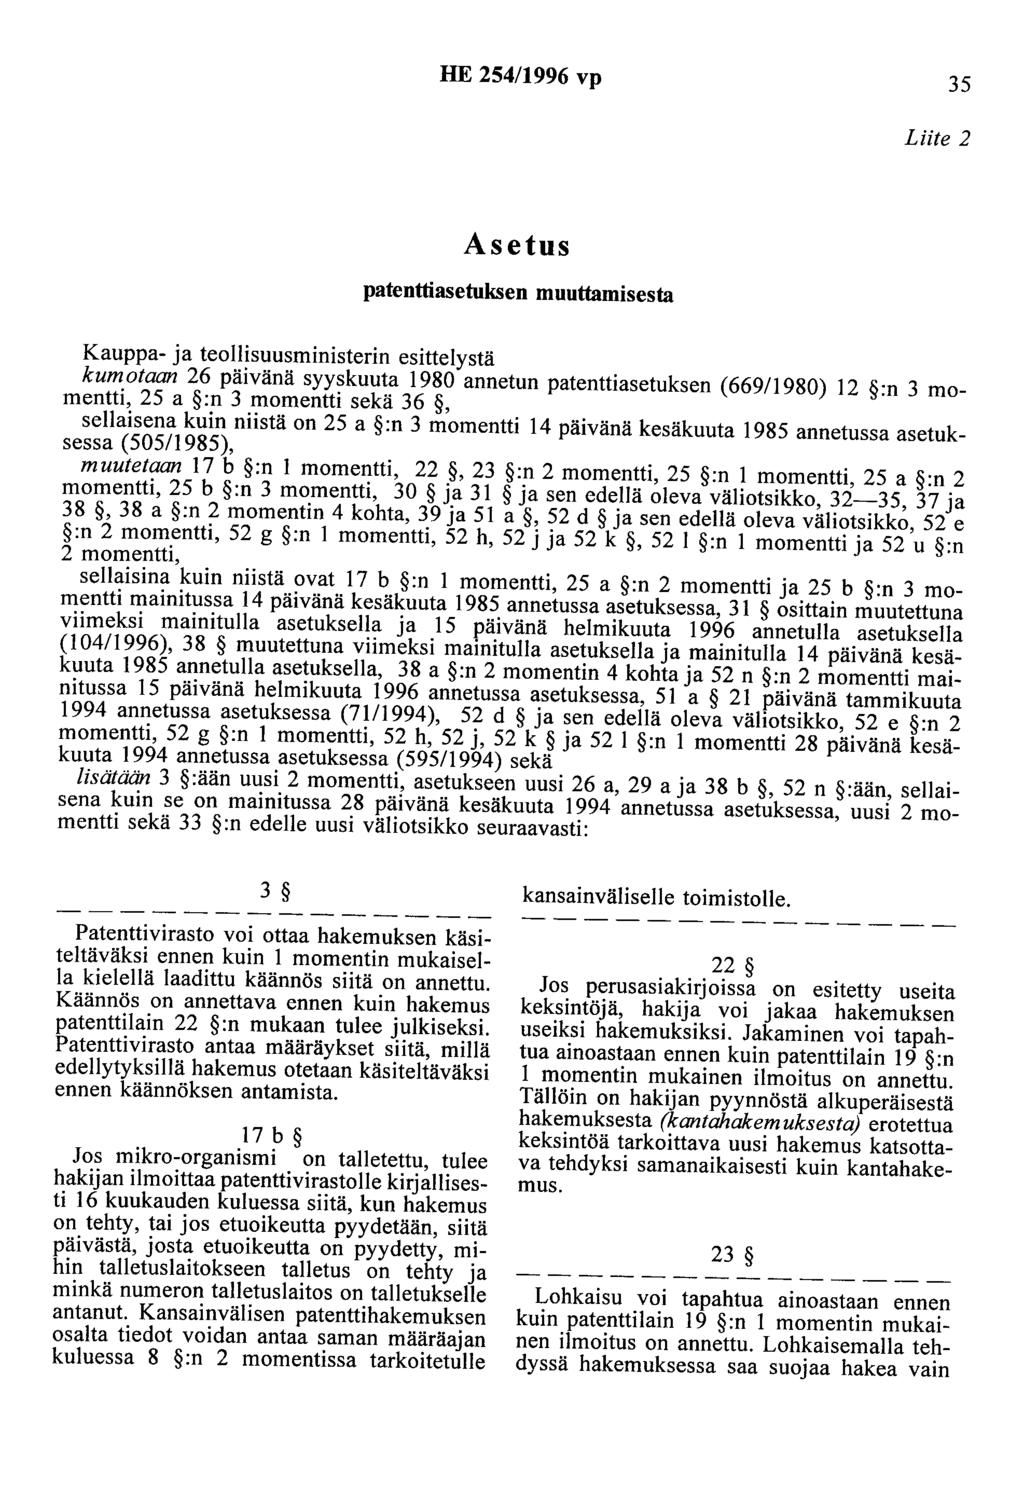 HE 254/1996 vp 35 Liite 2 Asetus patenttiasetuksen muuttamisesta Kauppa- ja teollisuusministerin esittelystä kumotaan 26 päivänä syyskuuta 1980 annetun patenttiasetuksen (669/1980) 12 :n 3 momentti,